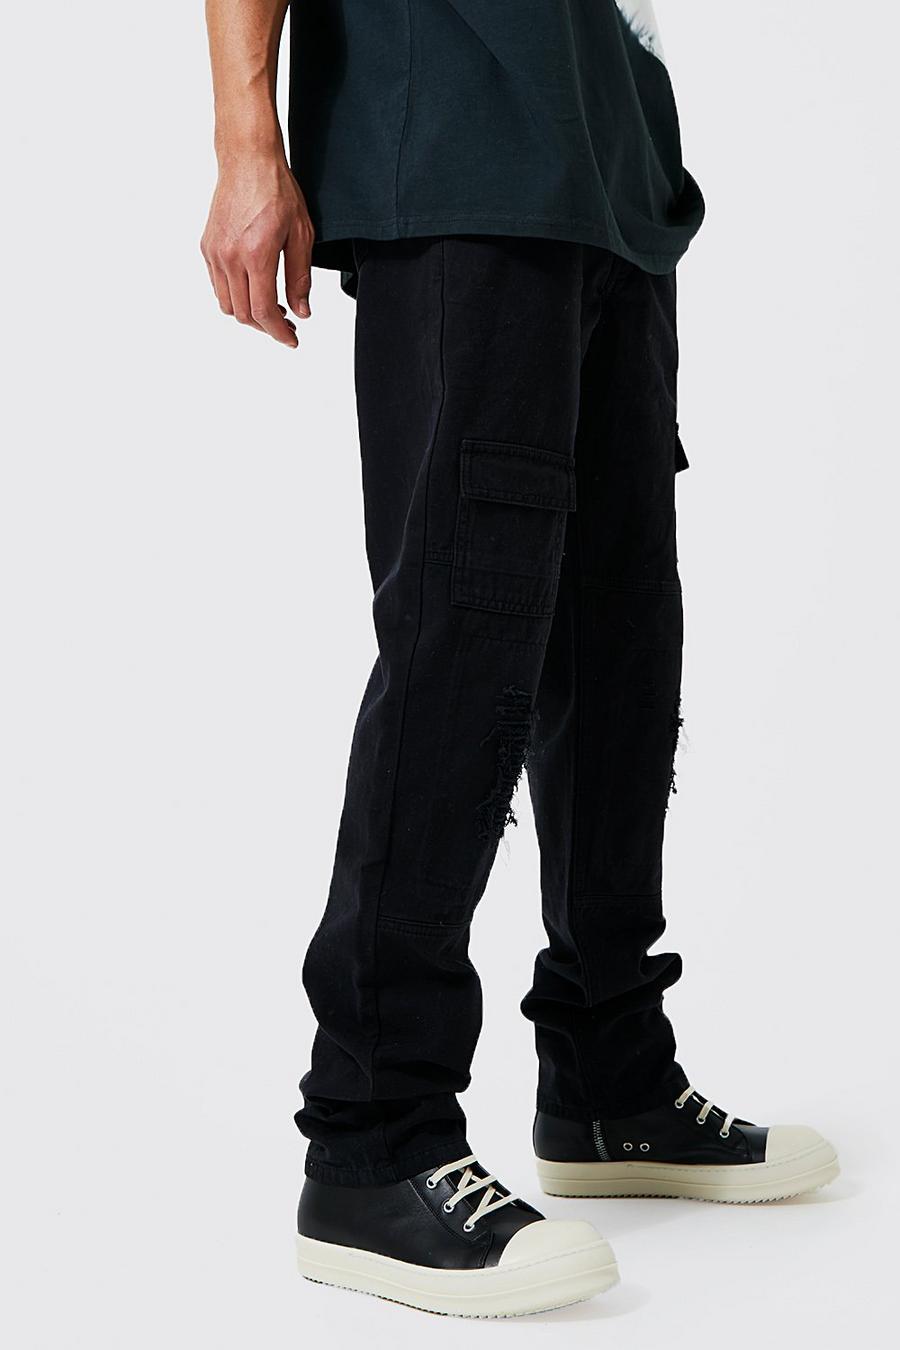 Pantaloni Cargo Tall dritti con smagliature, Black nero